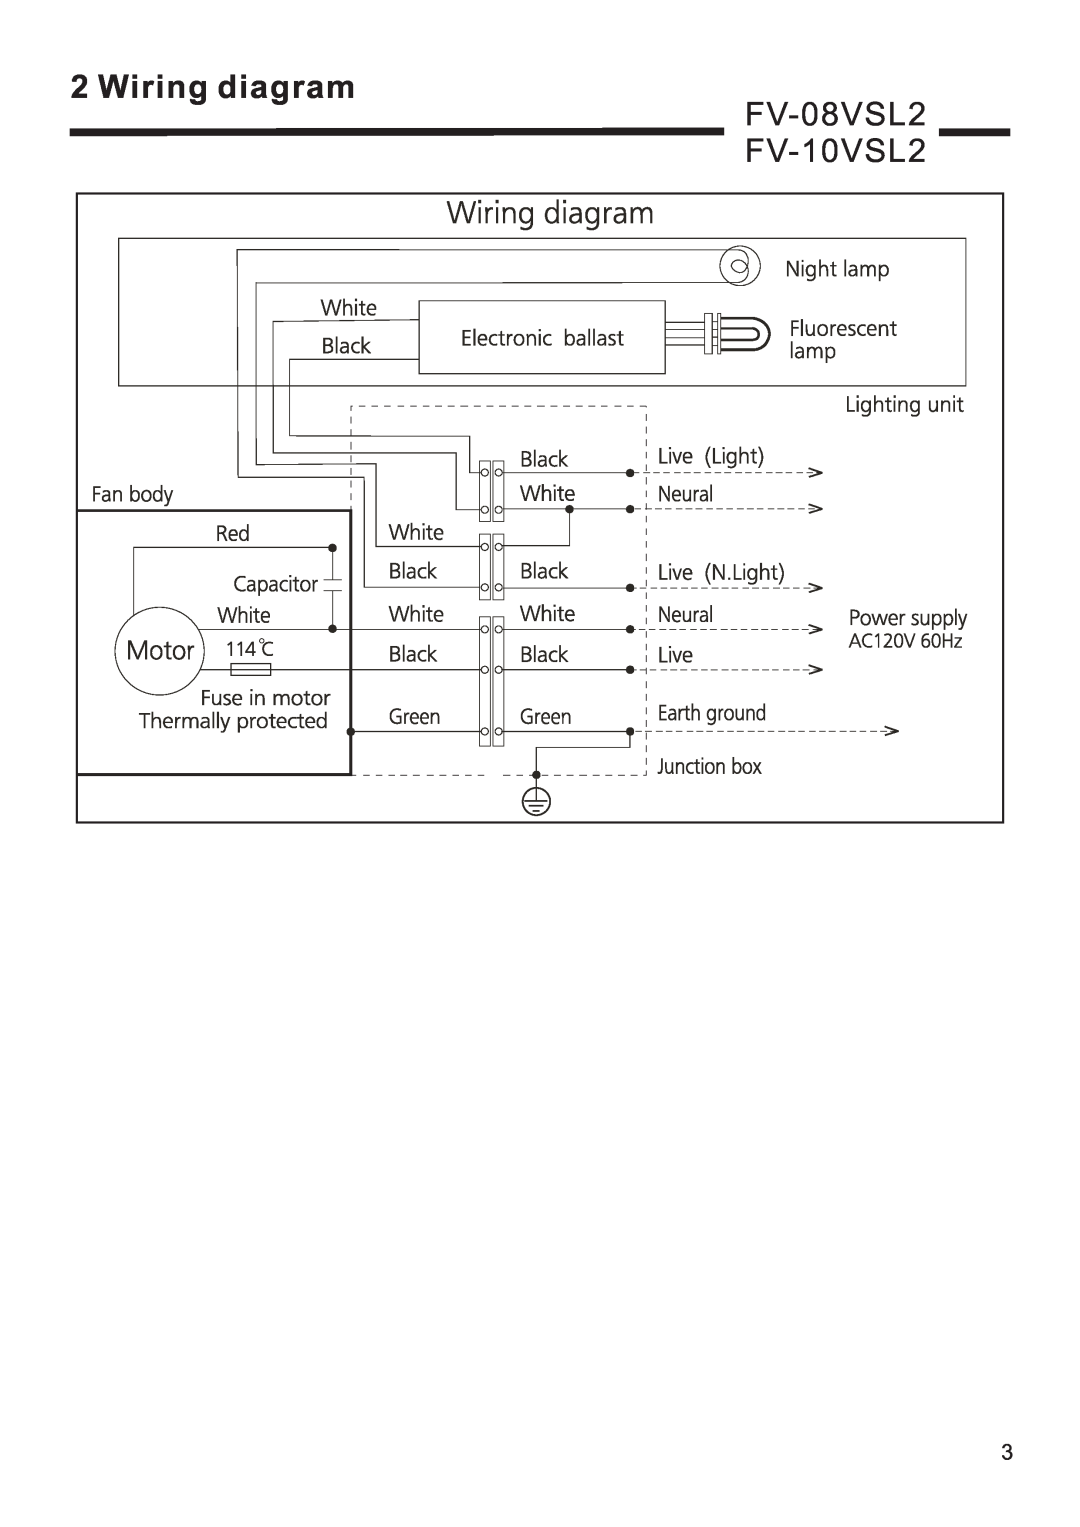 Panasonic FV-08vsl2 service manual Wiring diagram, FV-08VSL2, FV-10VSL2 